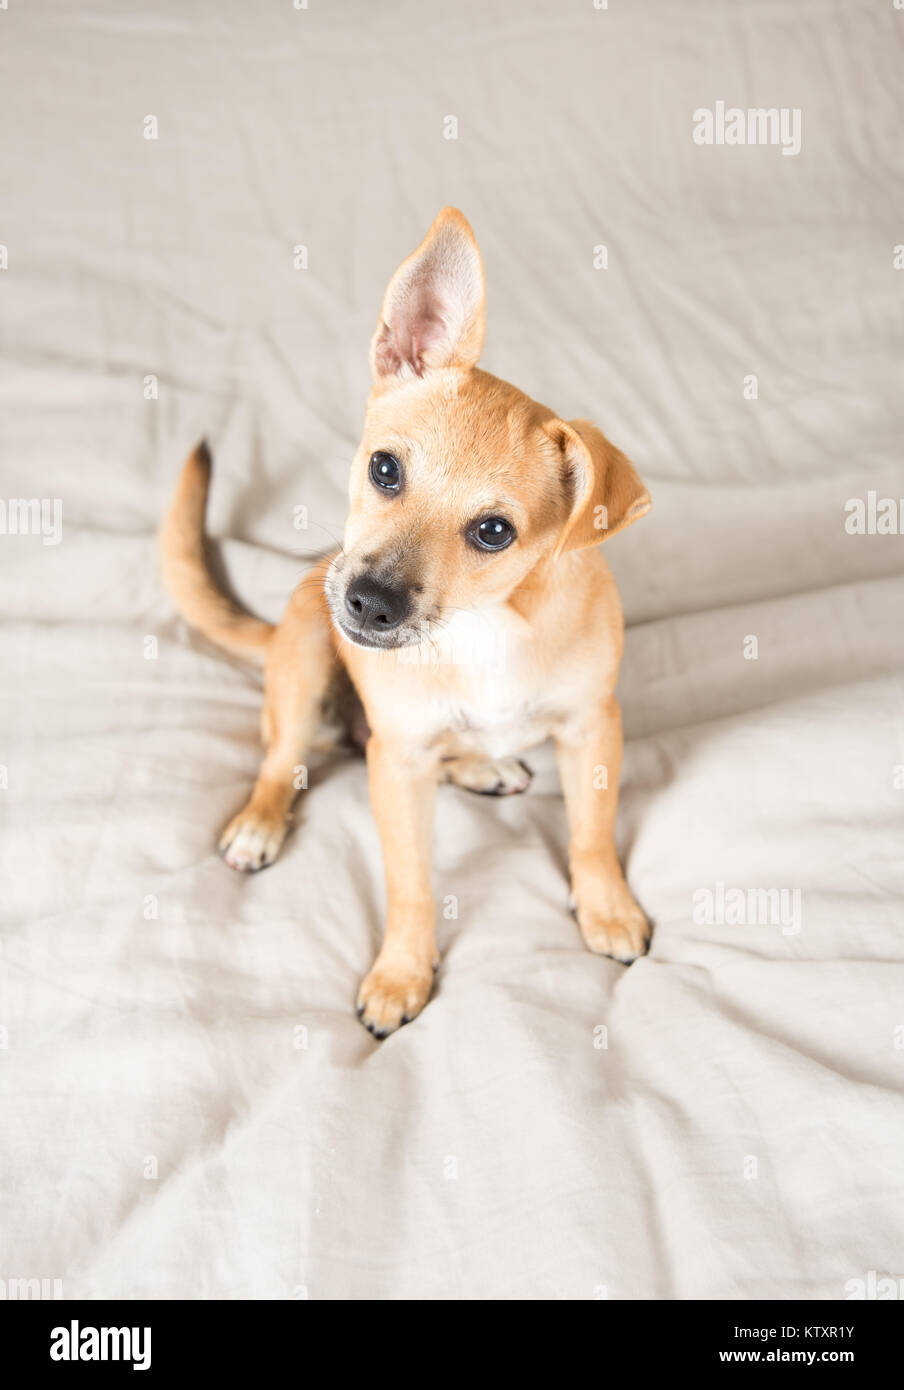 Adorable Terrier mix Welpen mit einem Floppy Ohr Spielen auf dem Bett  Stockfotografie - Alamy